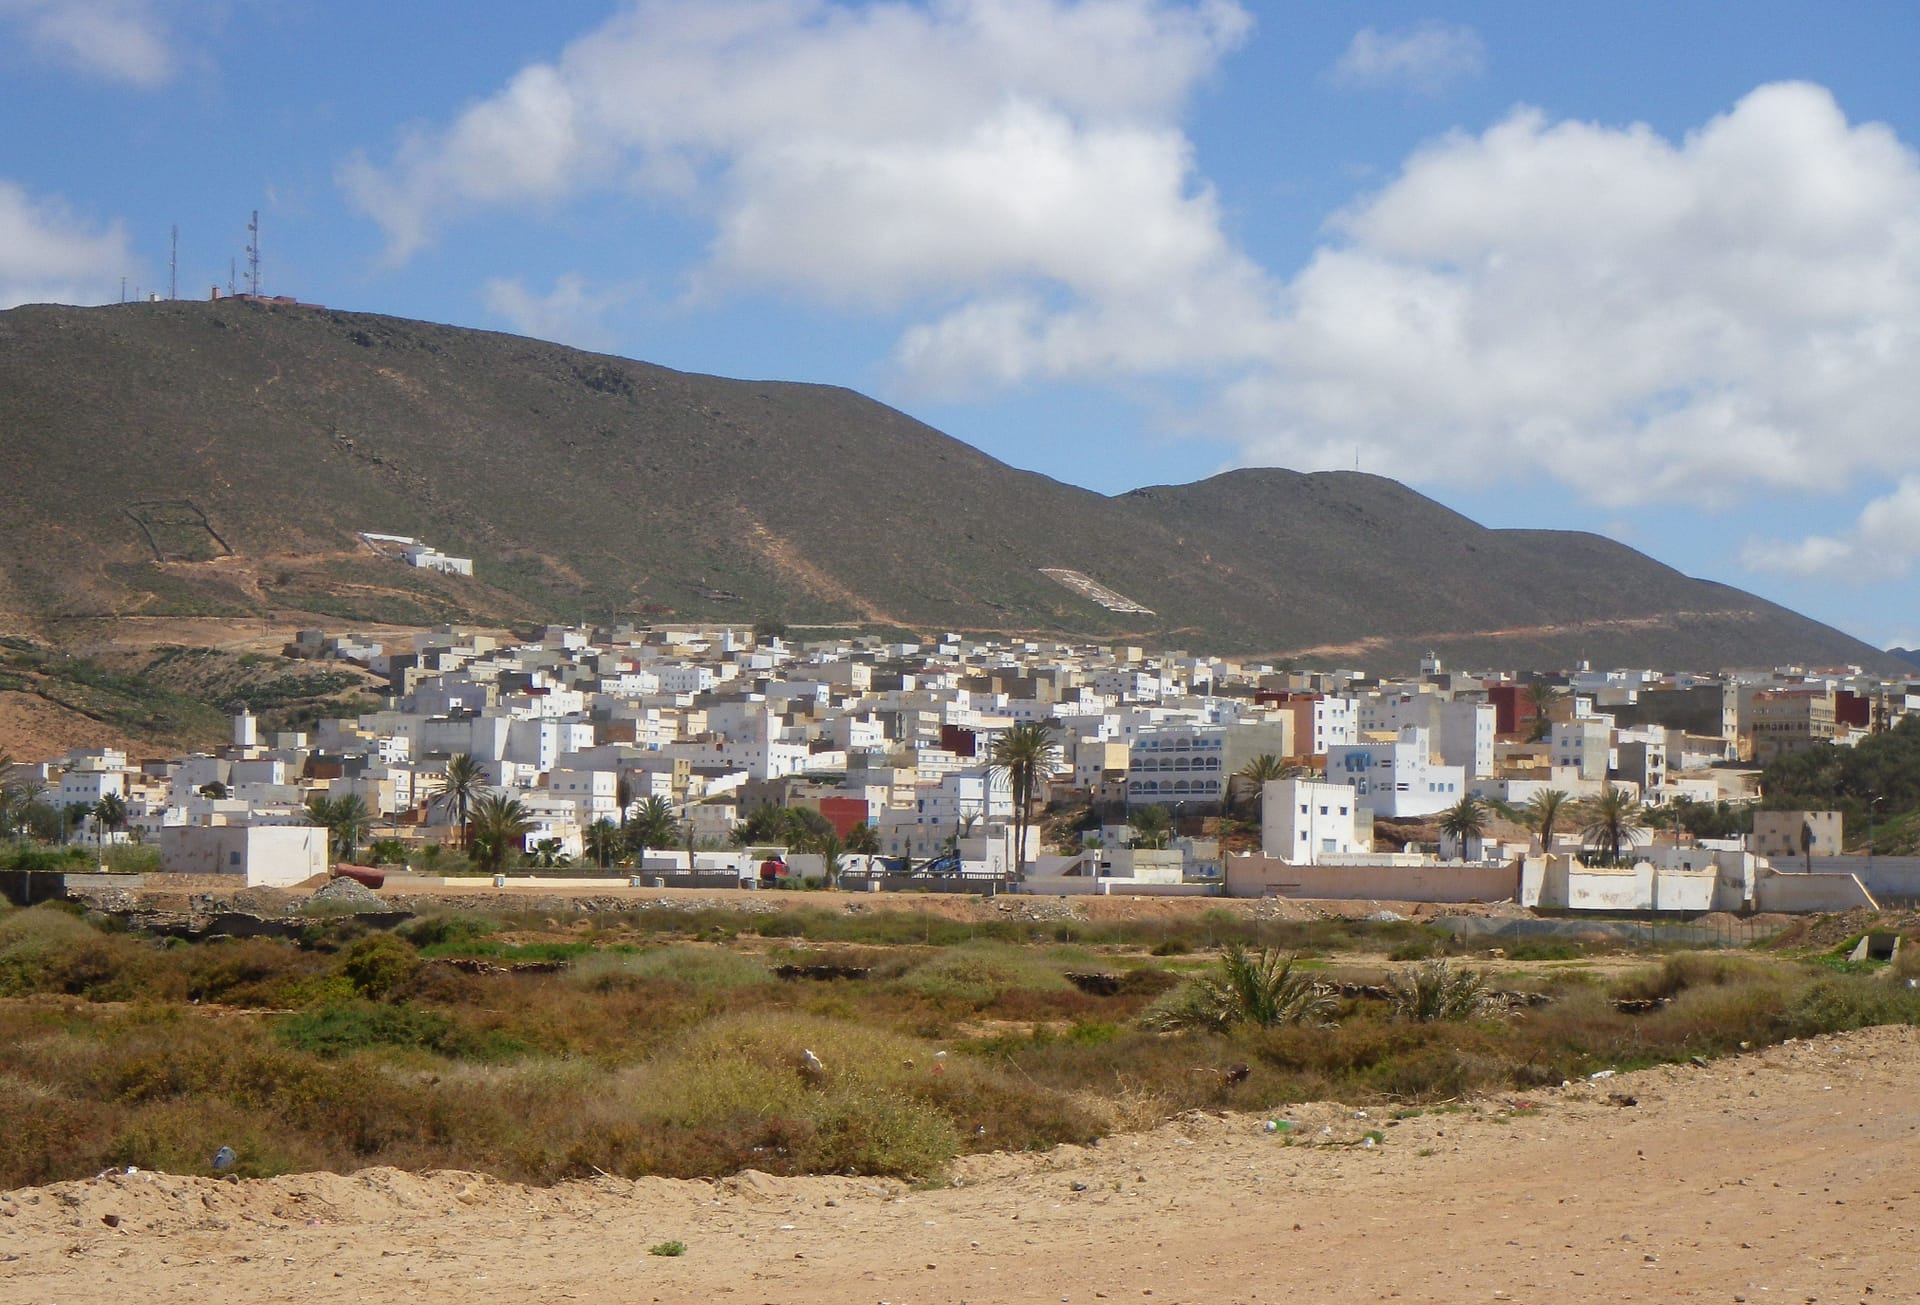 La lunga spiaggia di Sidi Ifni sotto spettacolari scogliere, invita a passeggiate al tramonto o all'alba.